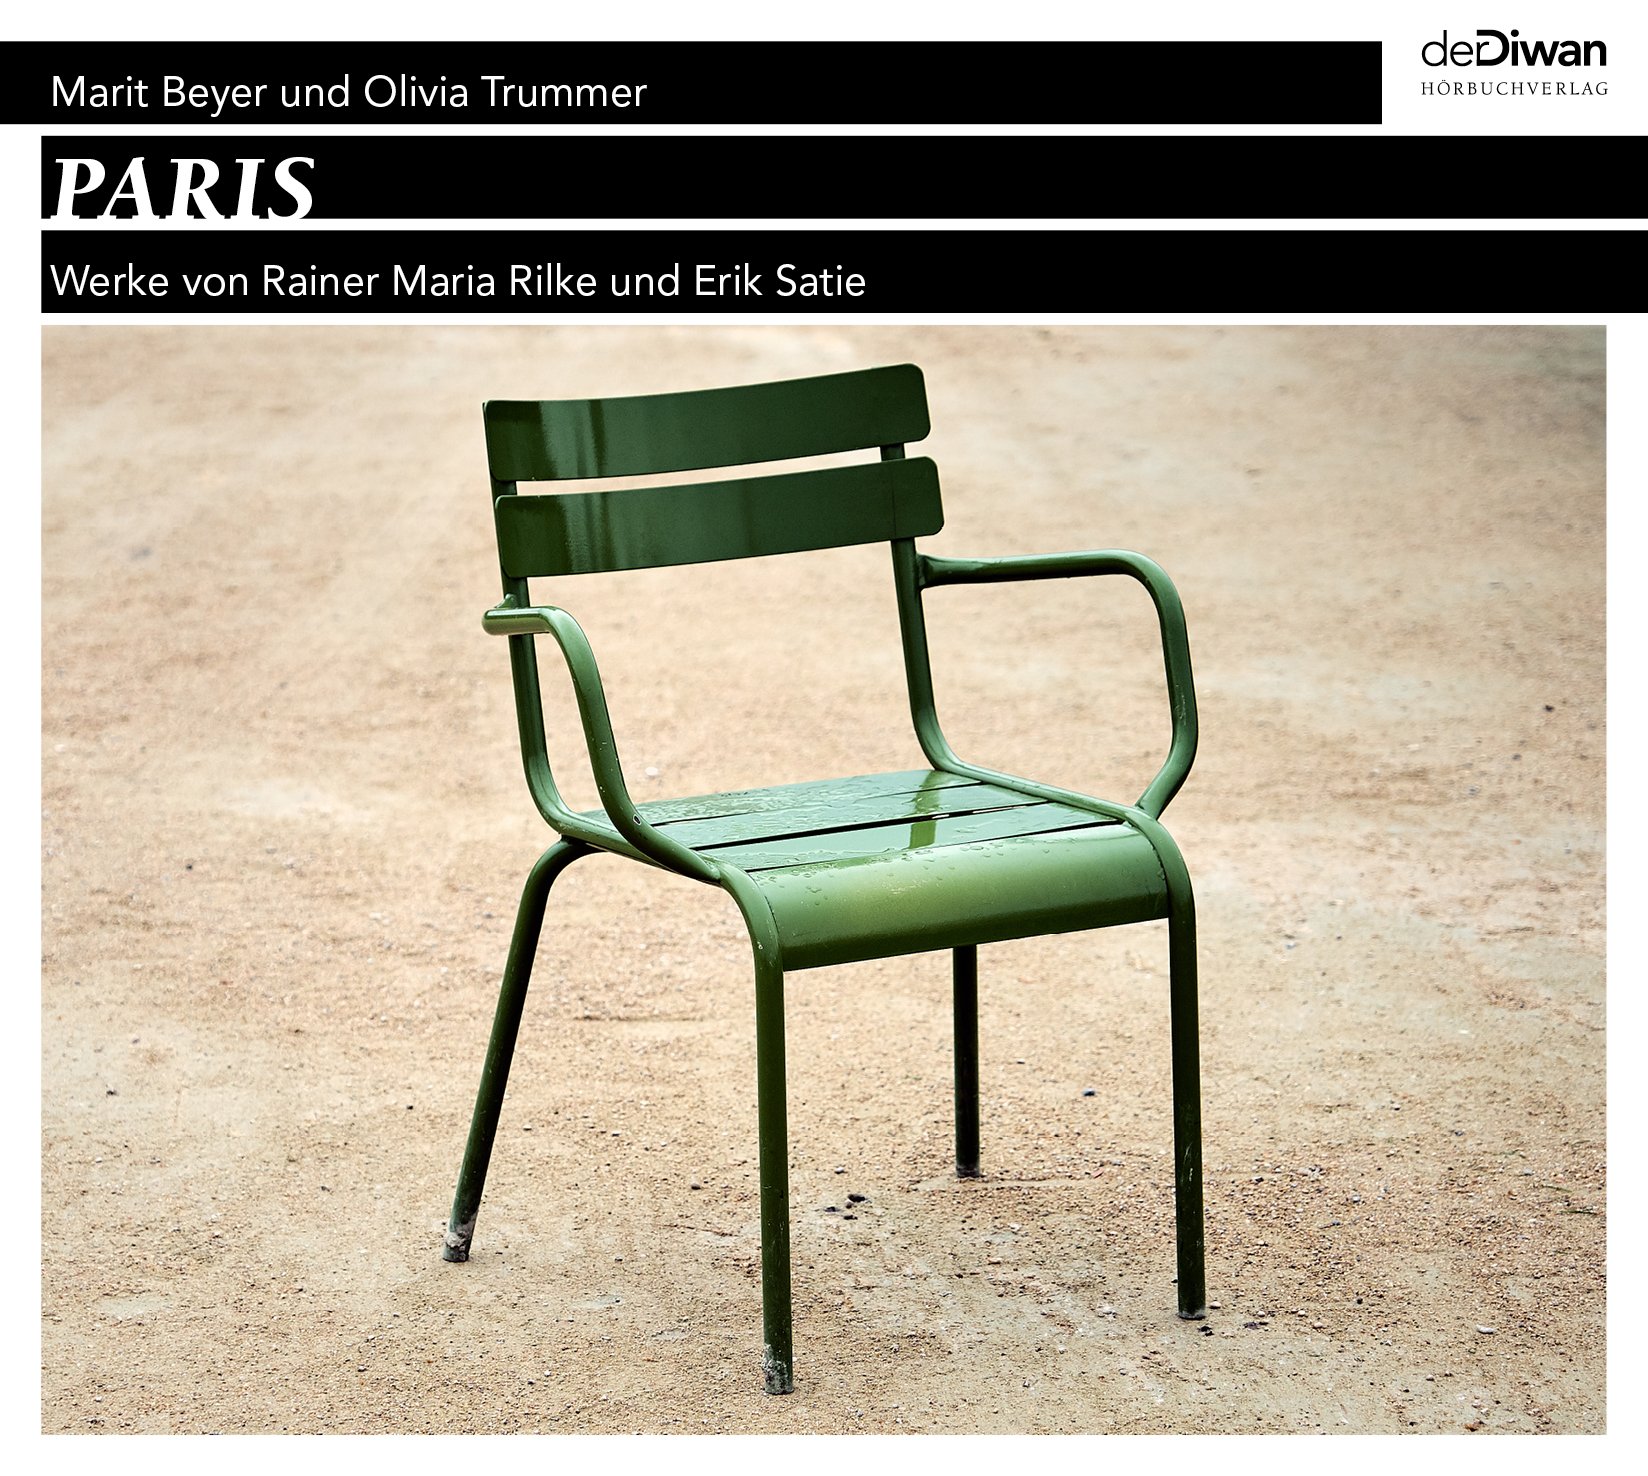 PARIS - Werke von Rainer Maria Rilke und Erik Satie